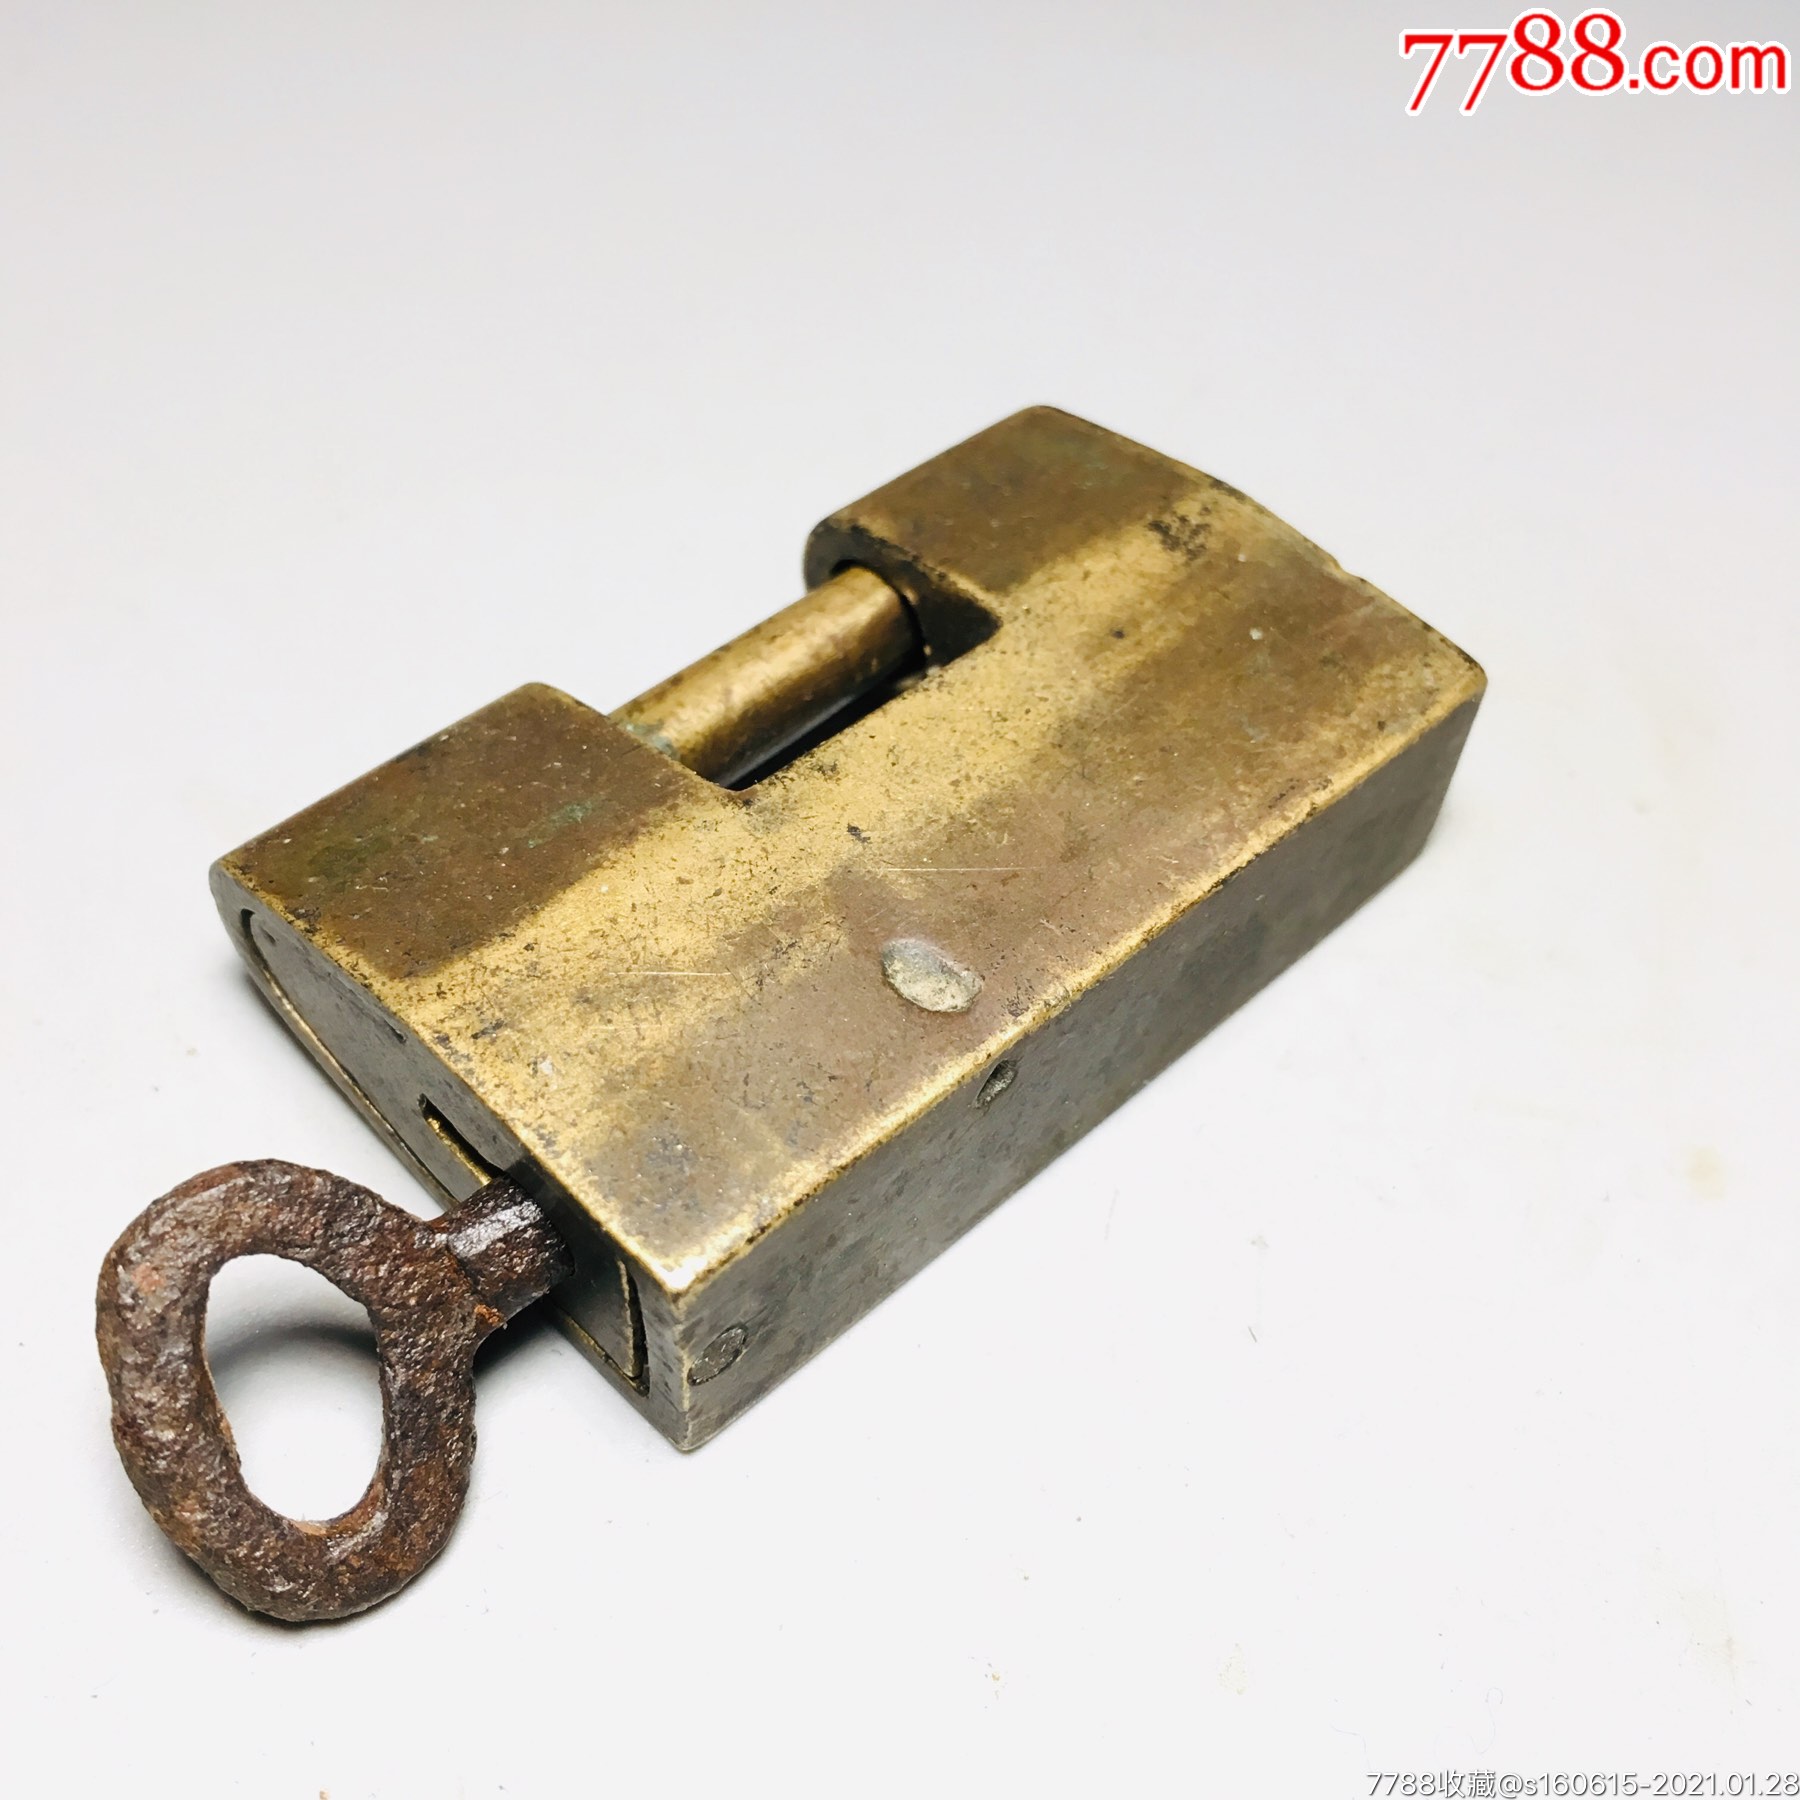 少见的清代侧面旋转老铜锁中式风格古锁特殊老锁头古锁具收藏